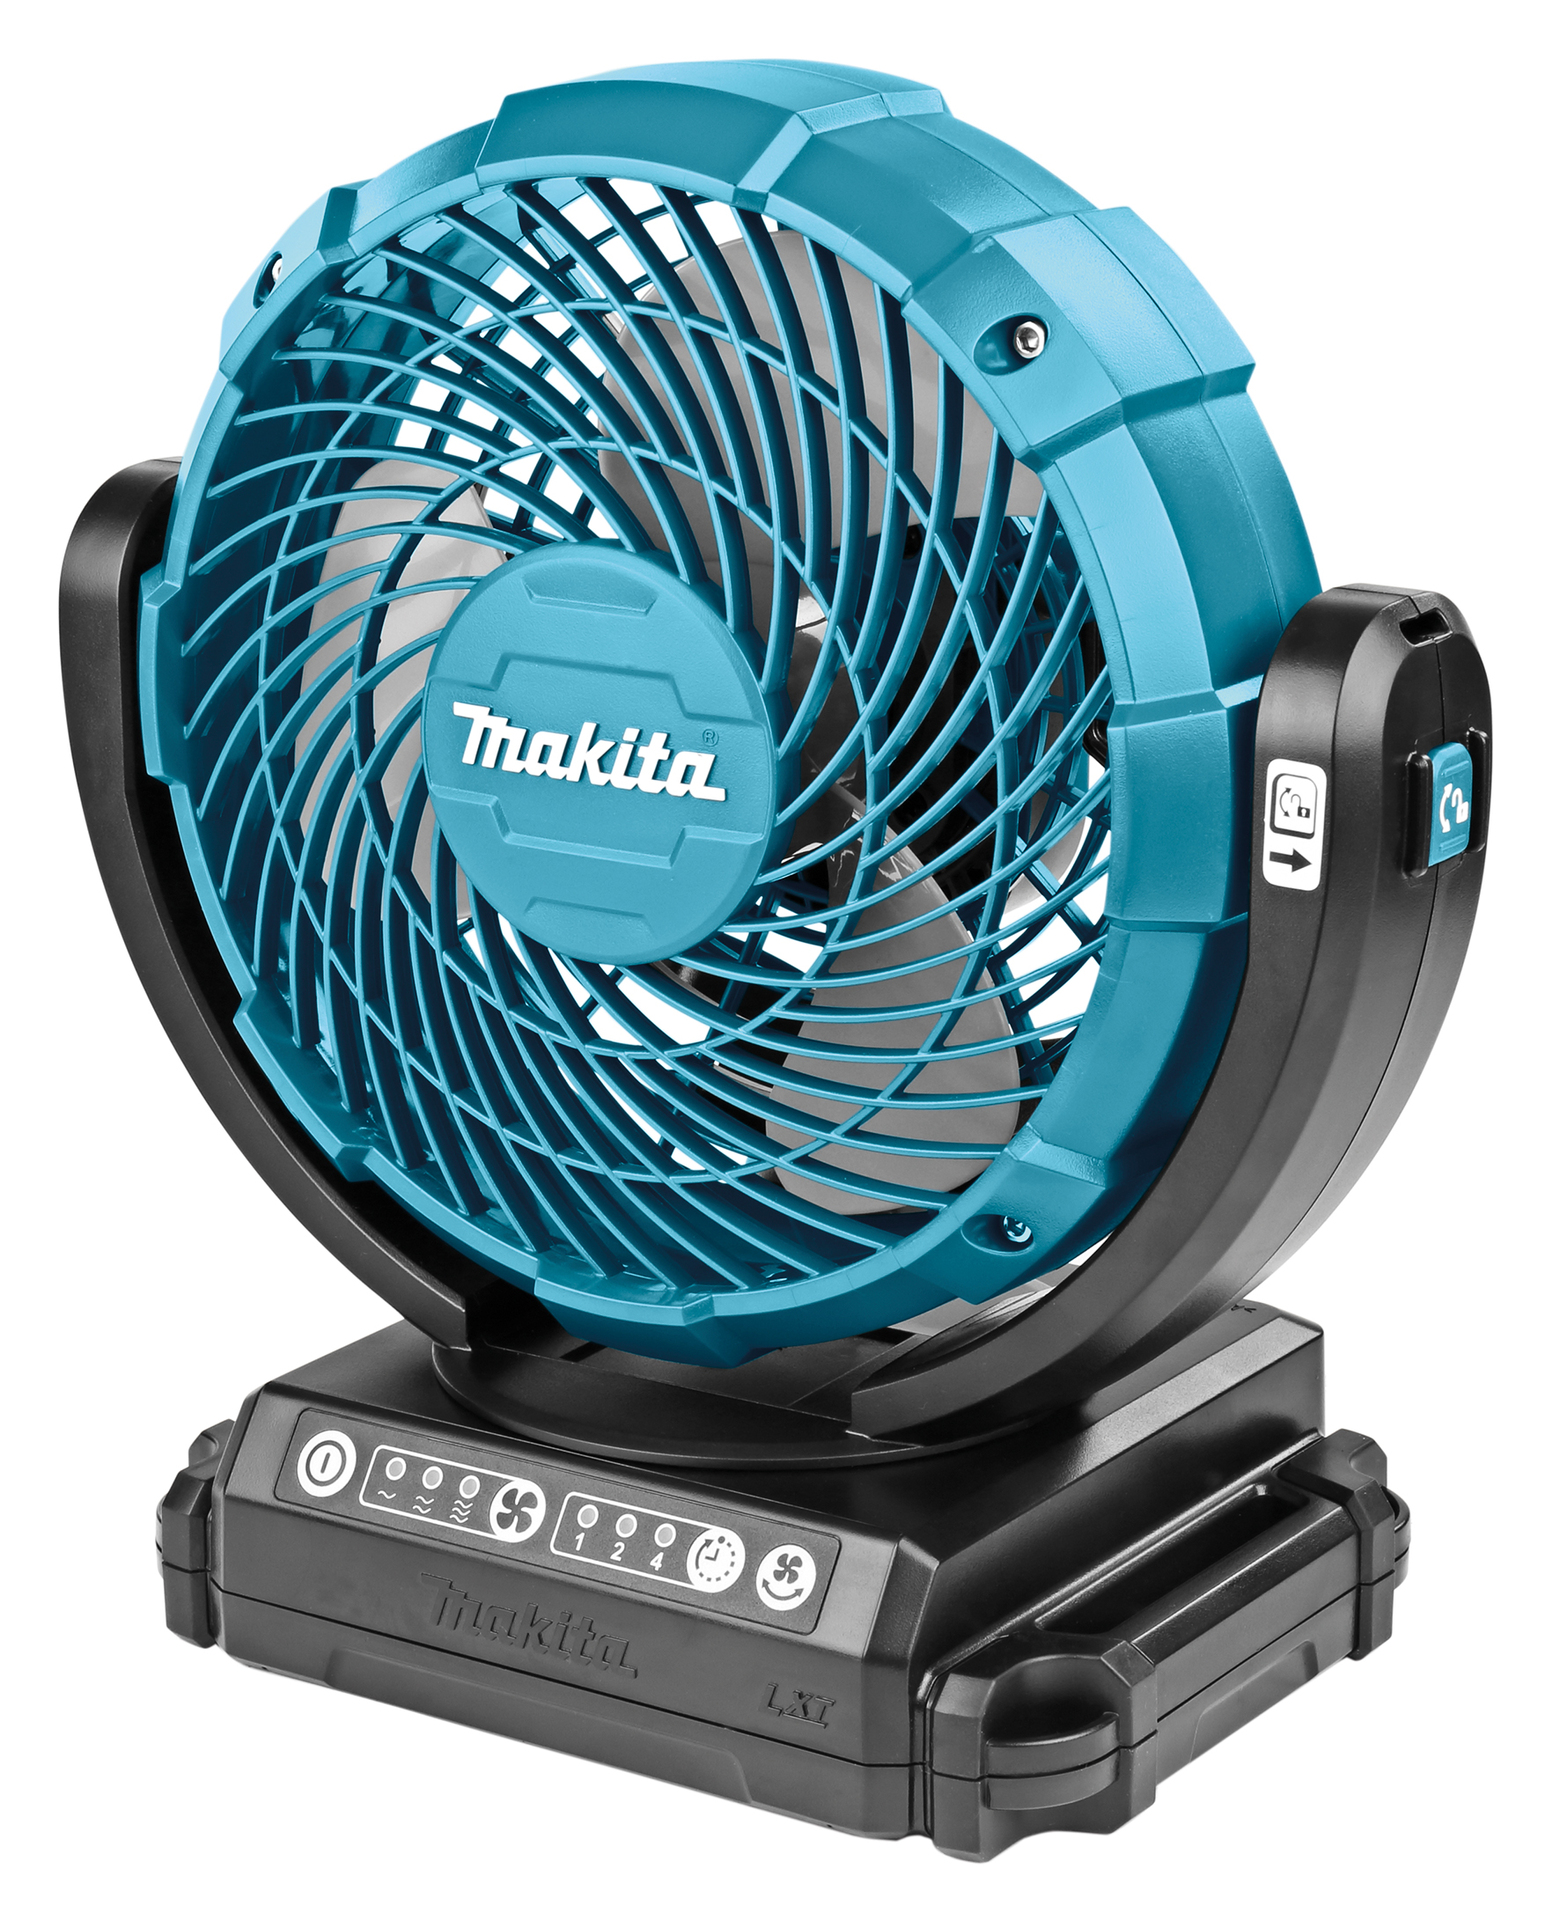 600w kabellose Auto-Lufter hitzer für Makita 18V Batterie Winter wärmer  Defroster Heizung & Lüfter mit 2USB-Anschlüssen zum Aufladen des Telefons -  AliExpress